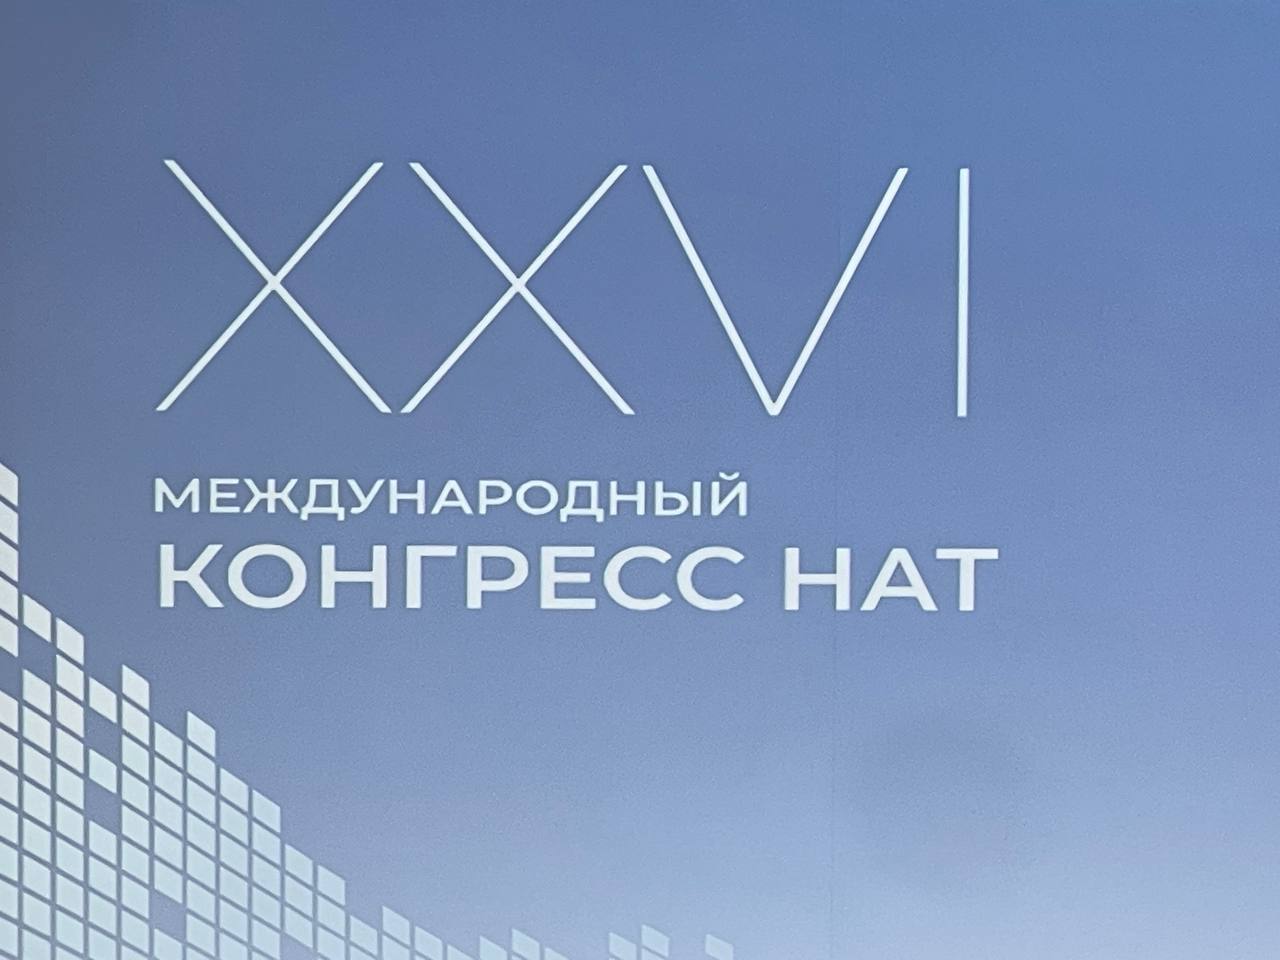 В Москве стартовал Международный конгресс НАТ XXVI